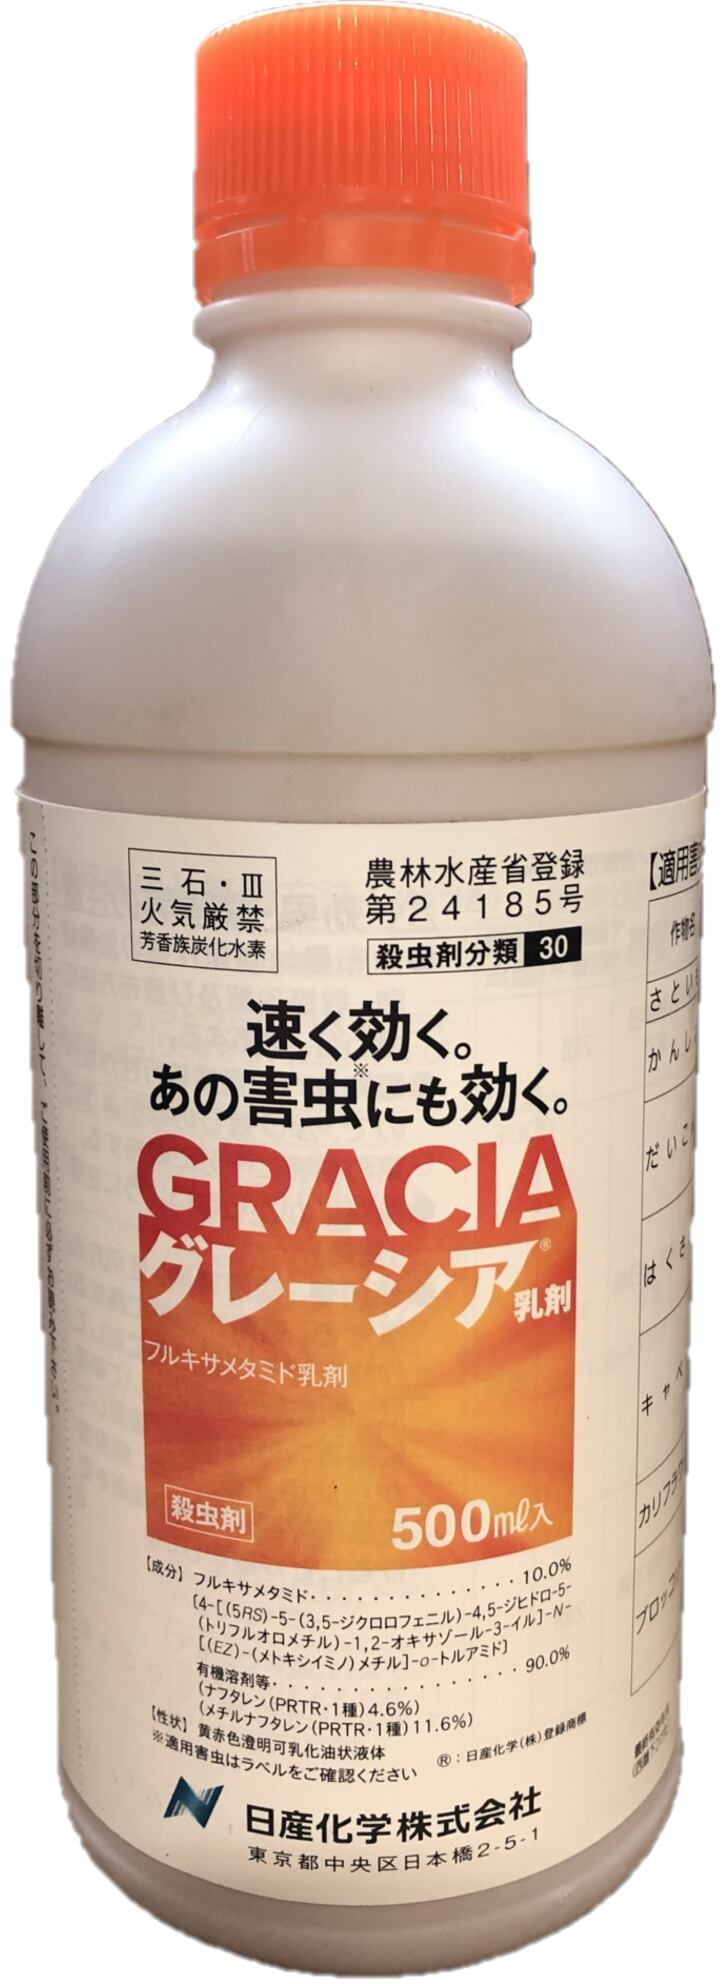 日産化学 殺虫剤 グレーシア 乳剤 500ml - 4